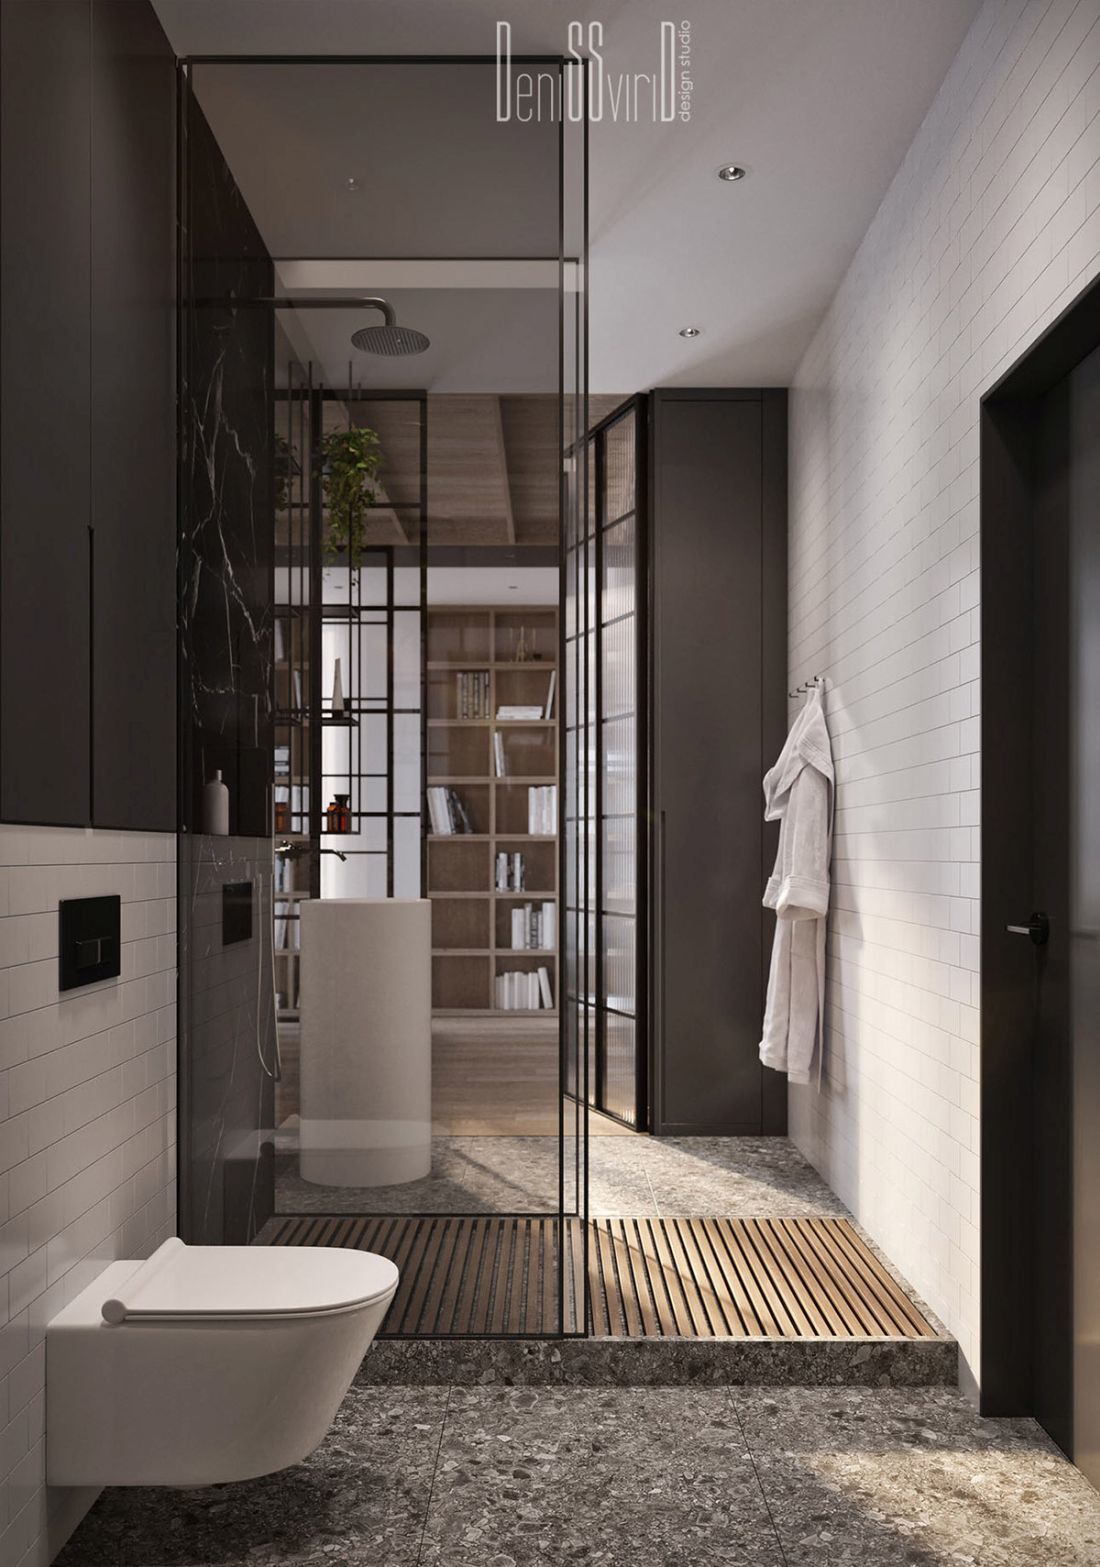 Stílusos loft stílusú fürdőszoba berendezés